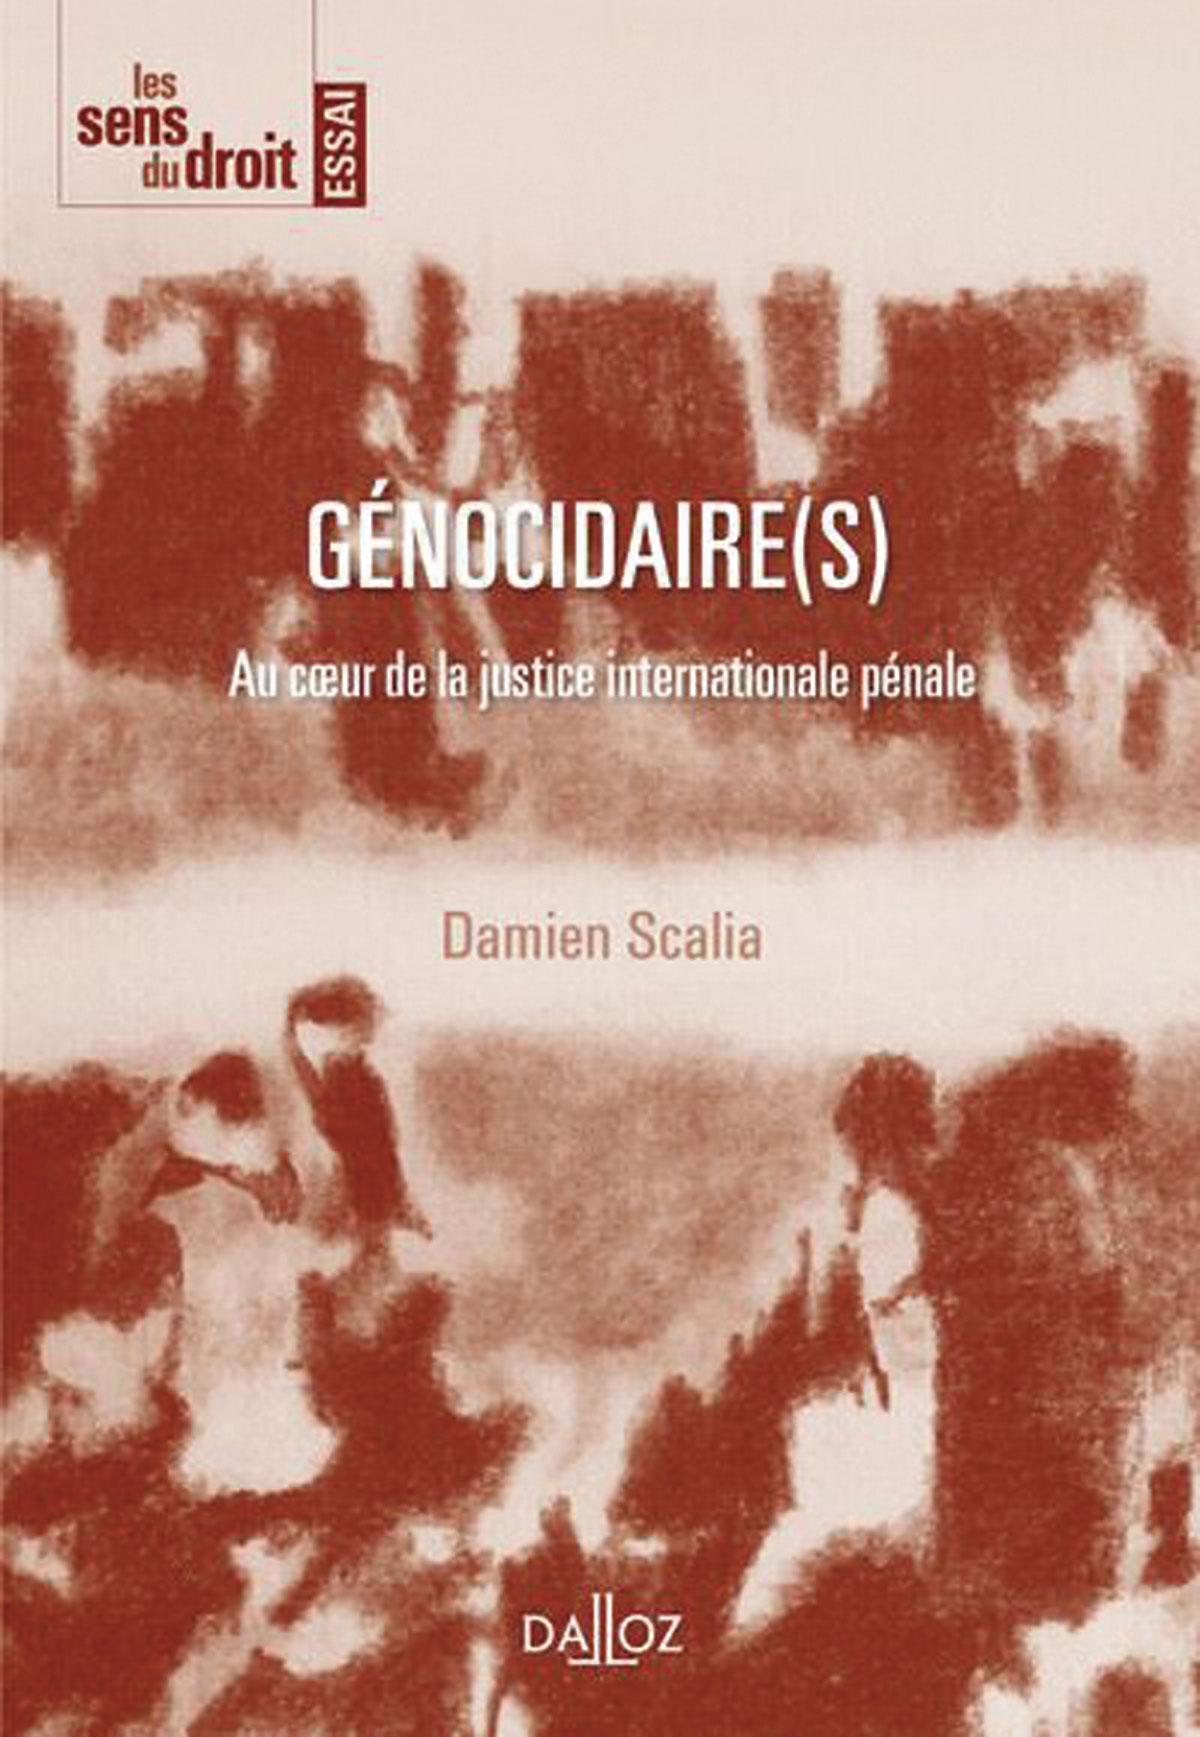 (1) Génocidaire(s). Au cœur de la justice internationale pénale, par Damien Scalia, Dalloz, 144 p.